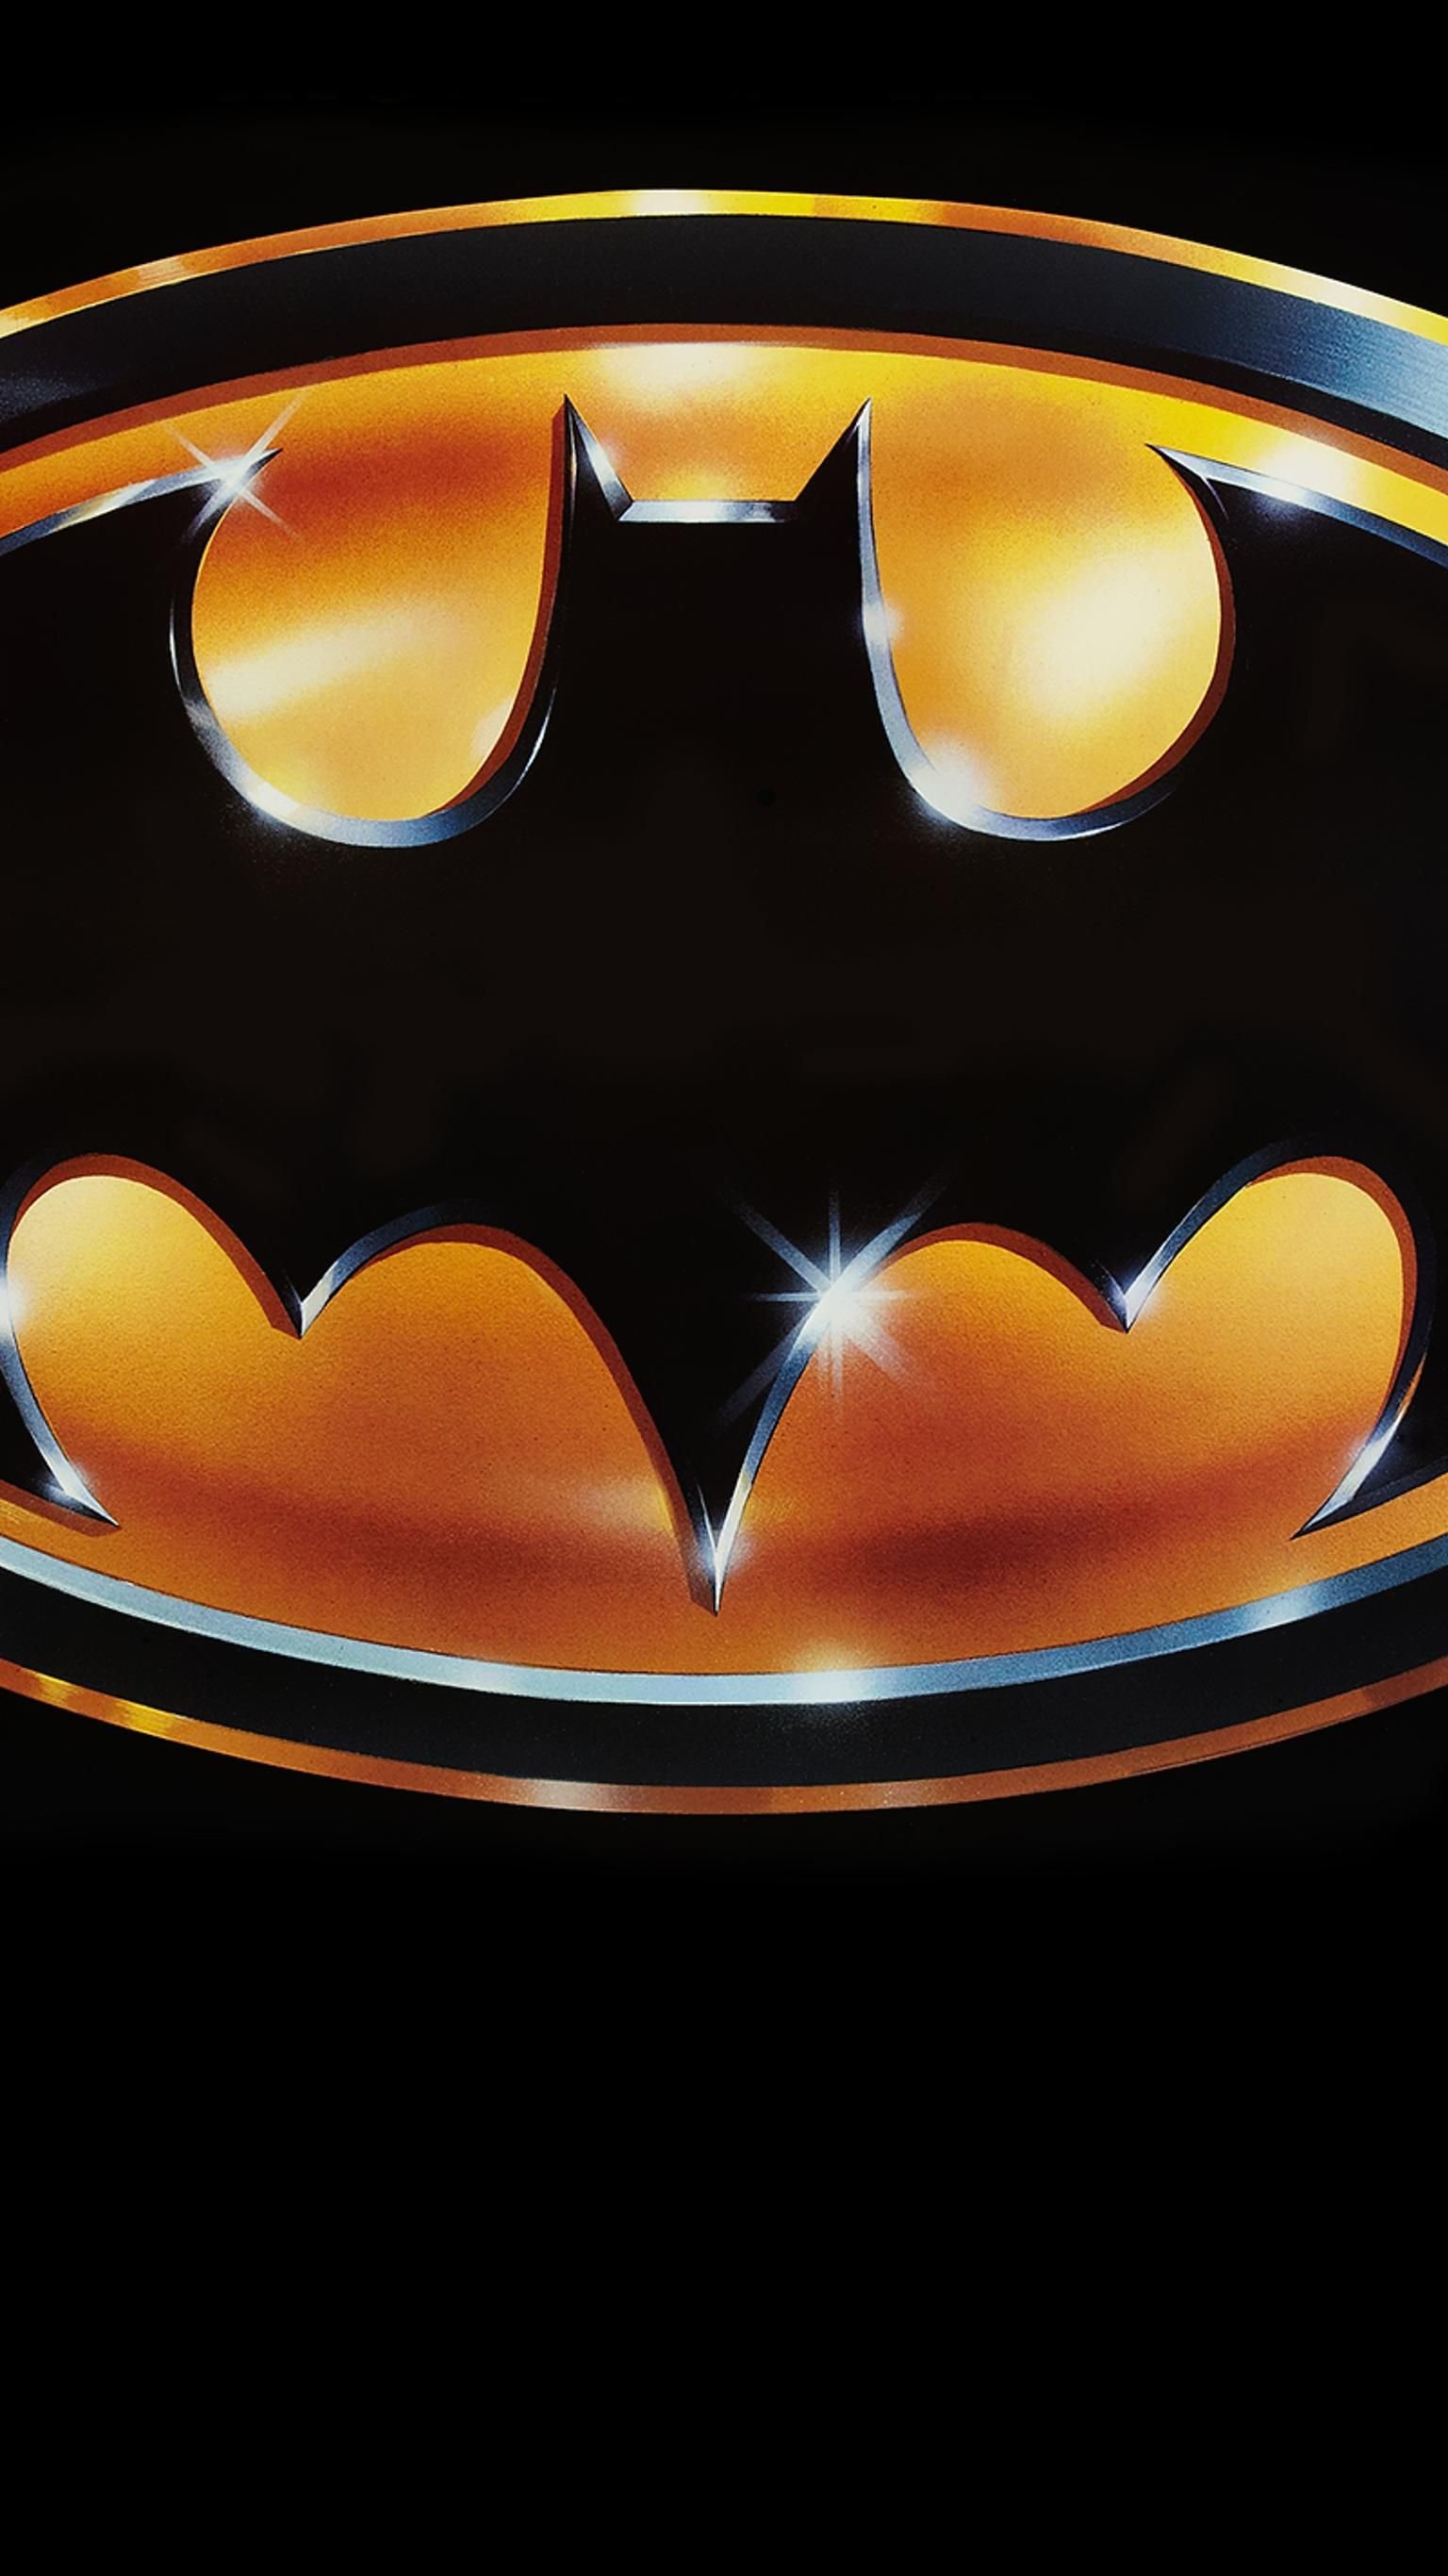 Superhero Batman logo